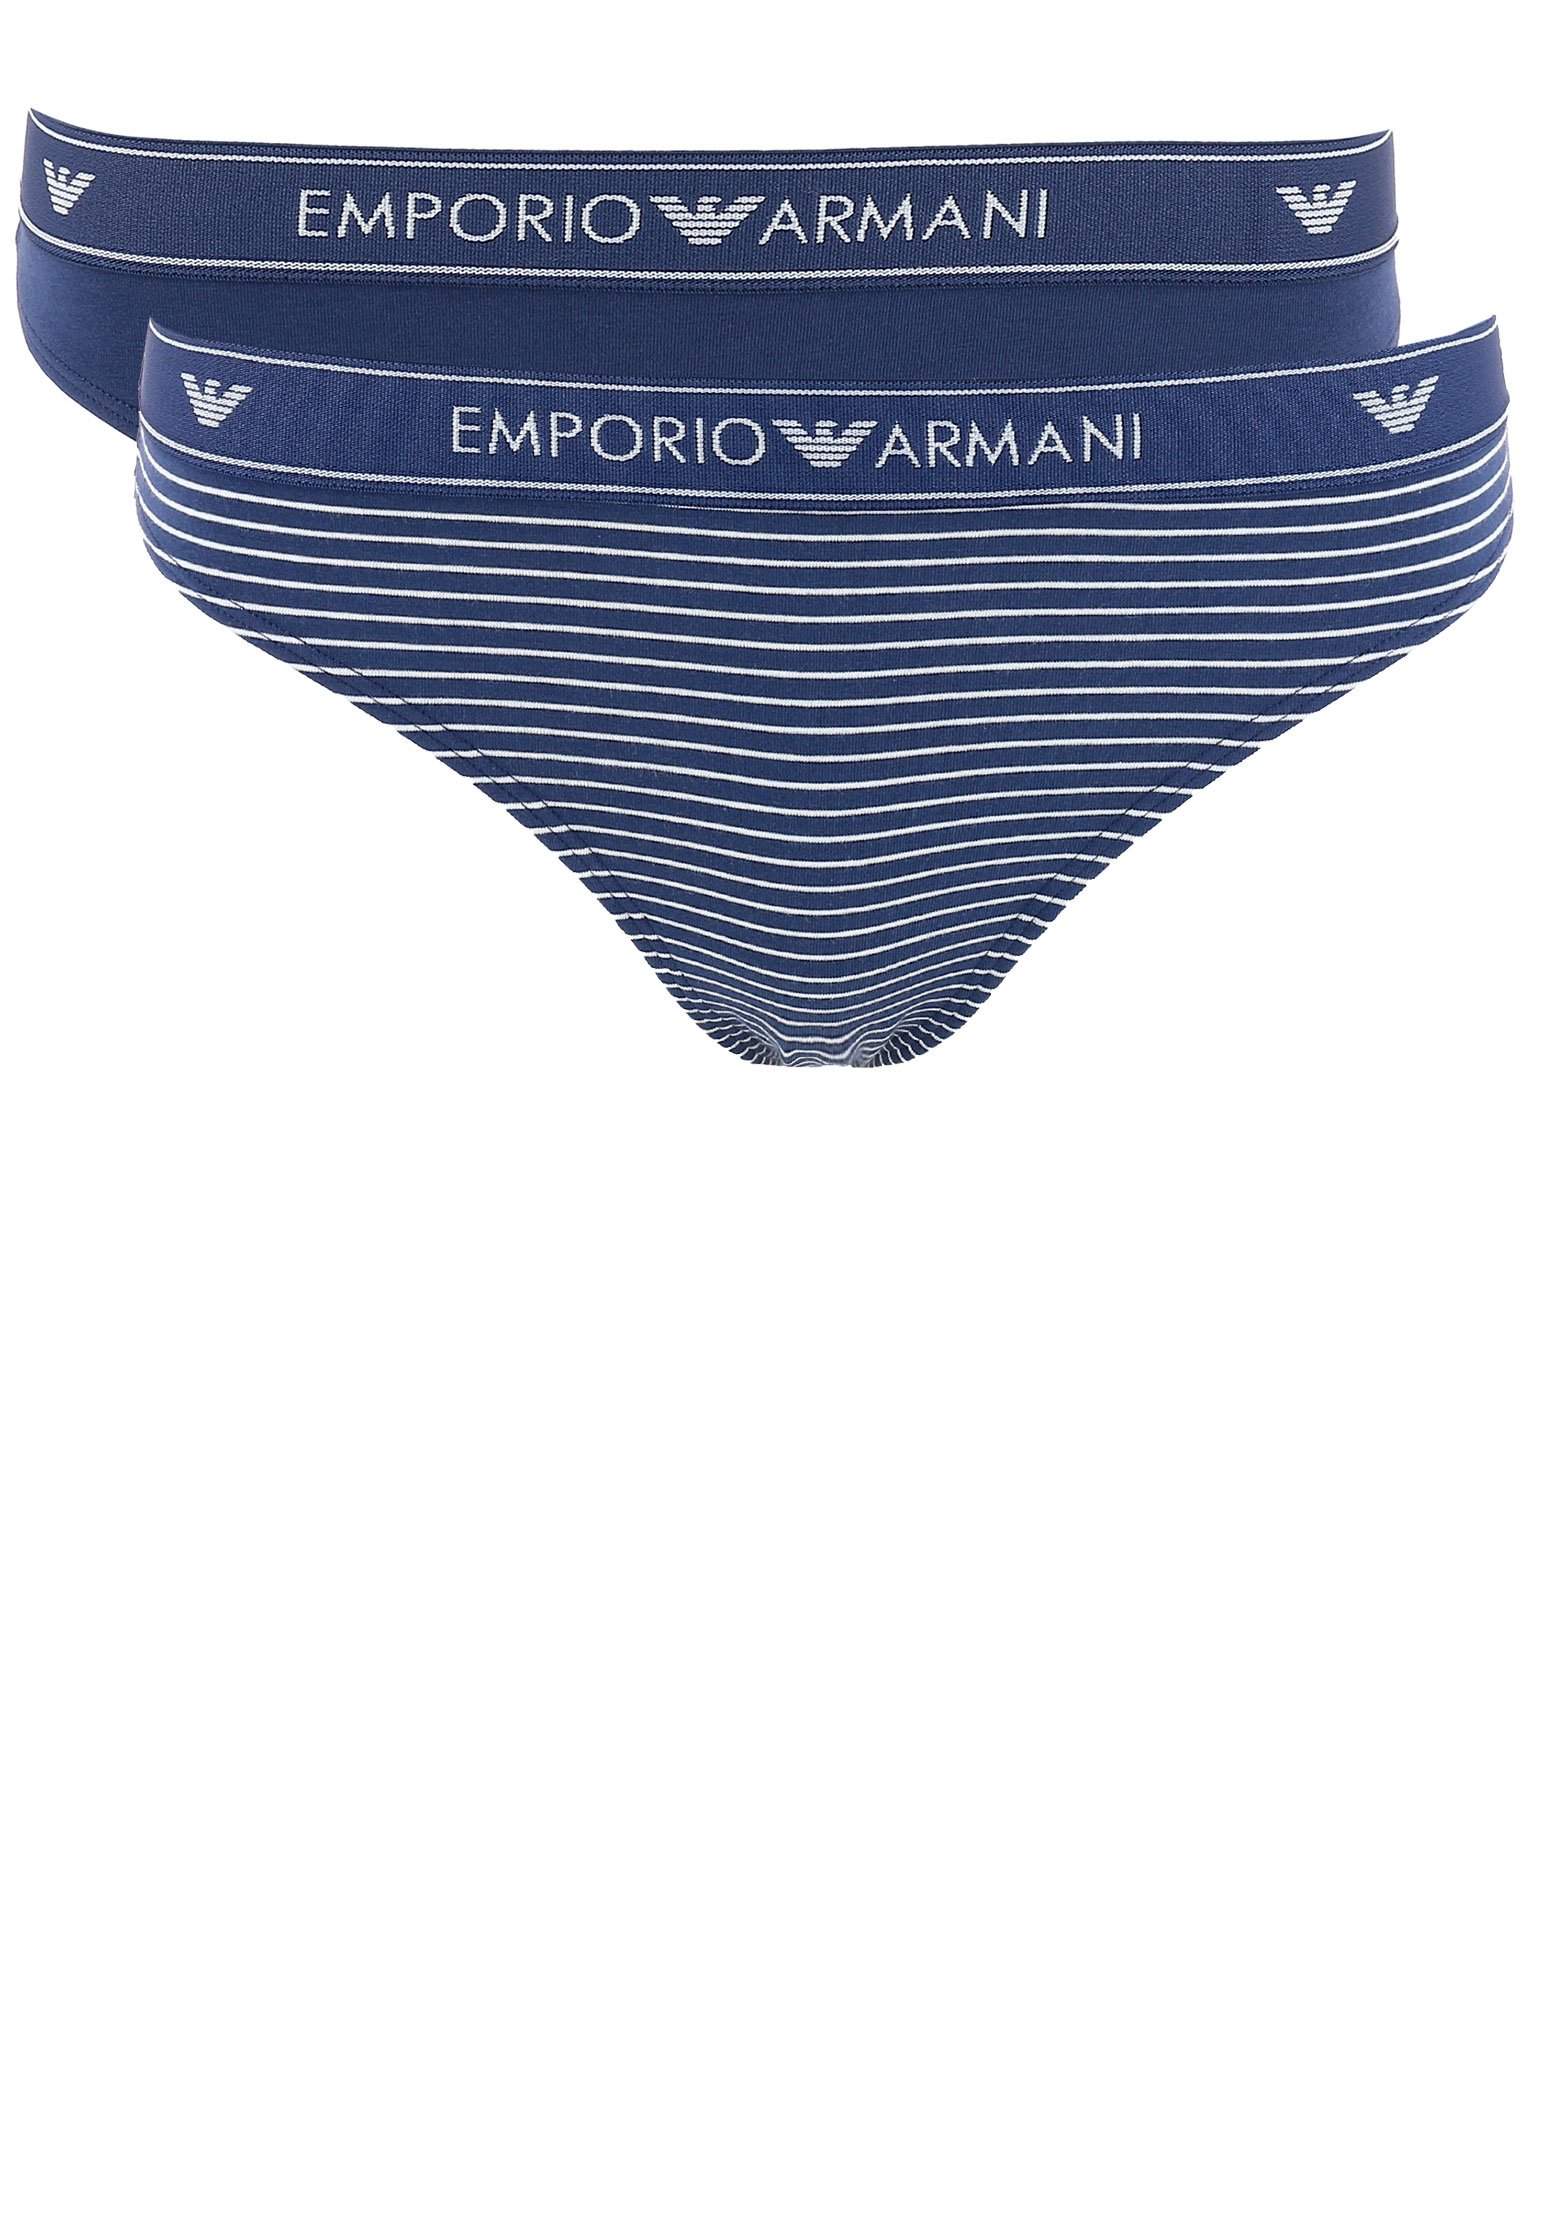 фото Комплект трусов женских emporio armani 116676 синих m